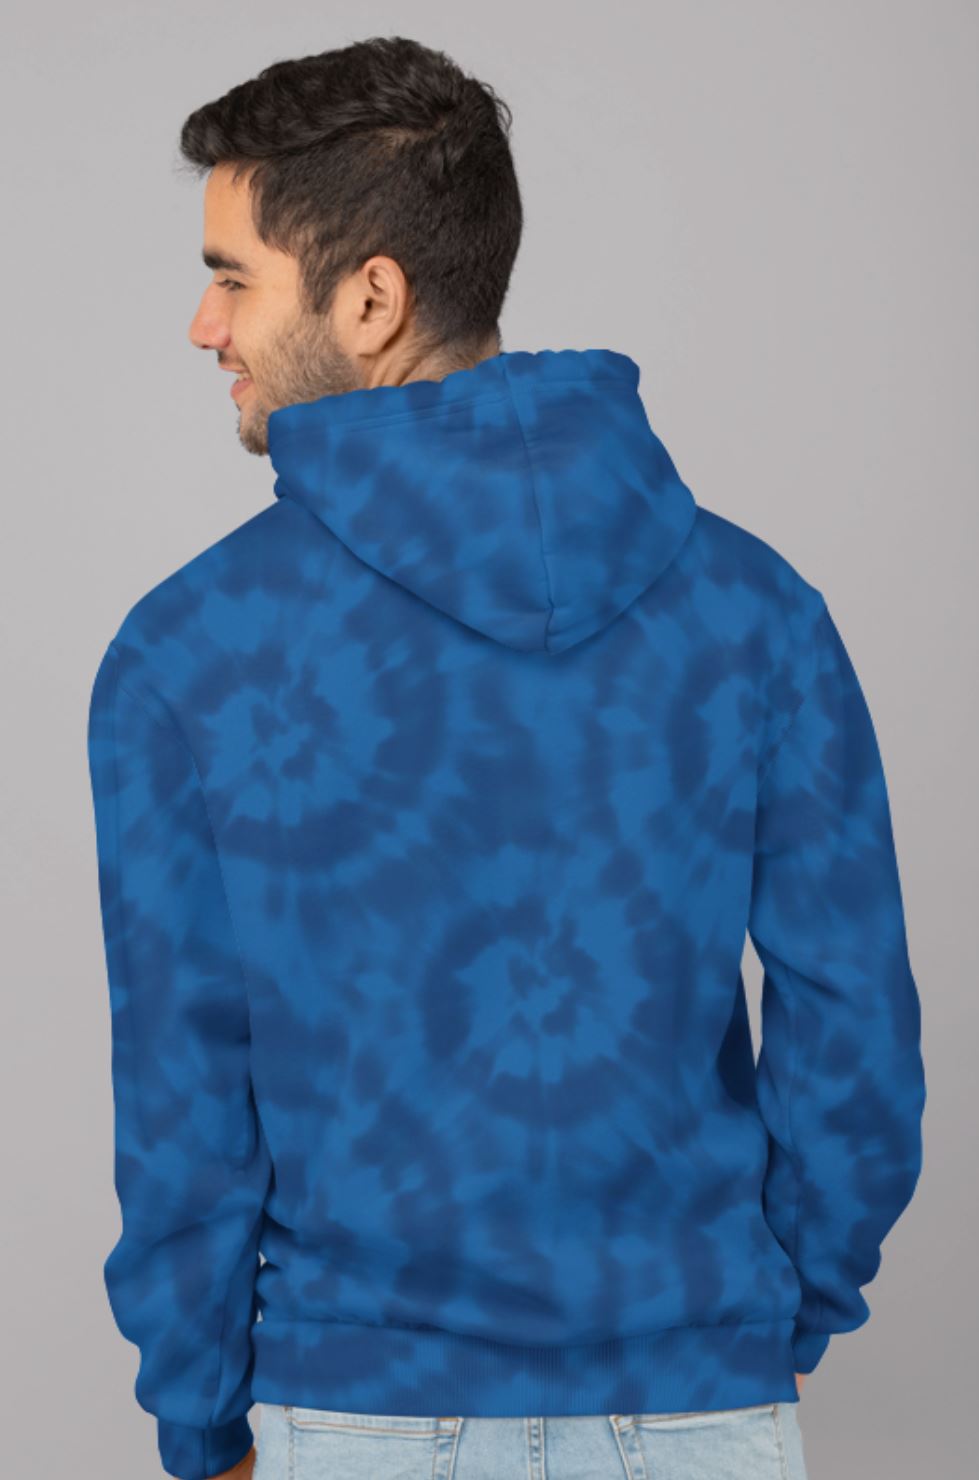 Tie-Dye Blue Unisex Hoodie with Fleece interior-Hoodie-TaraHuntDesigns